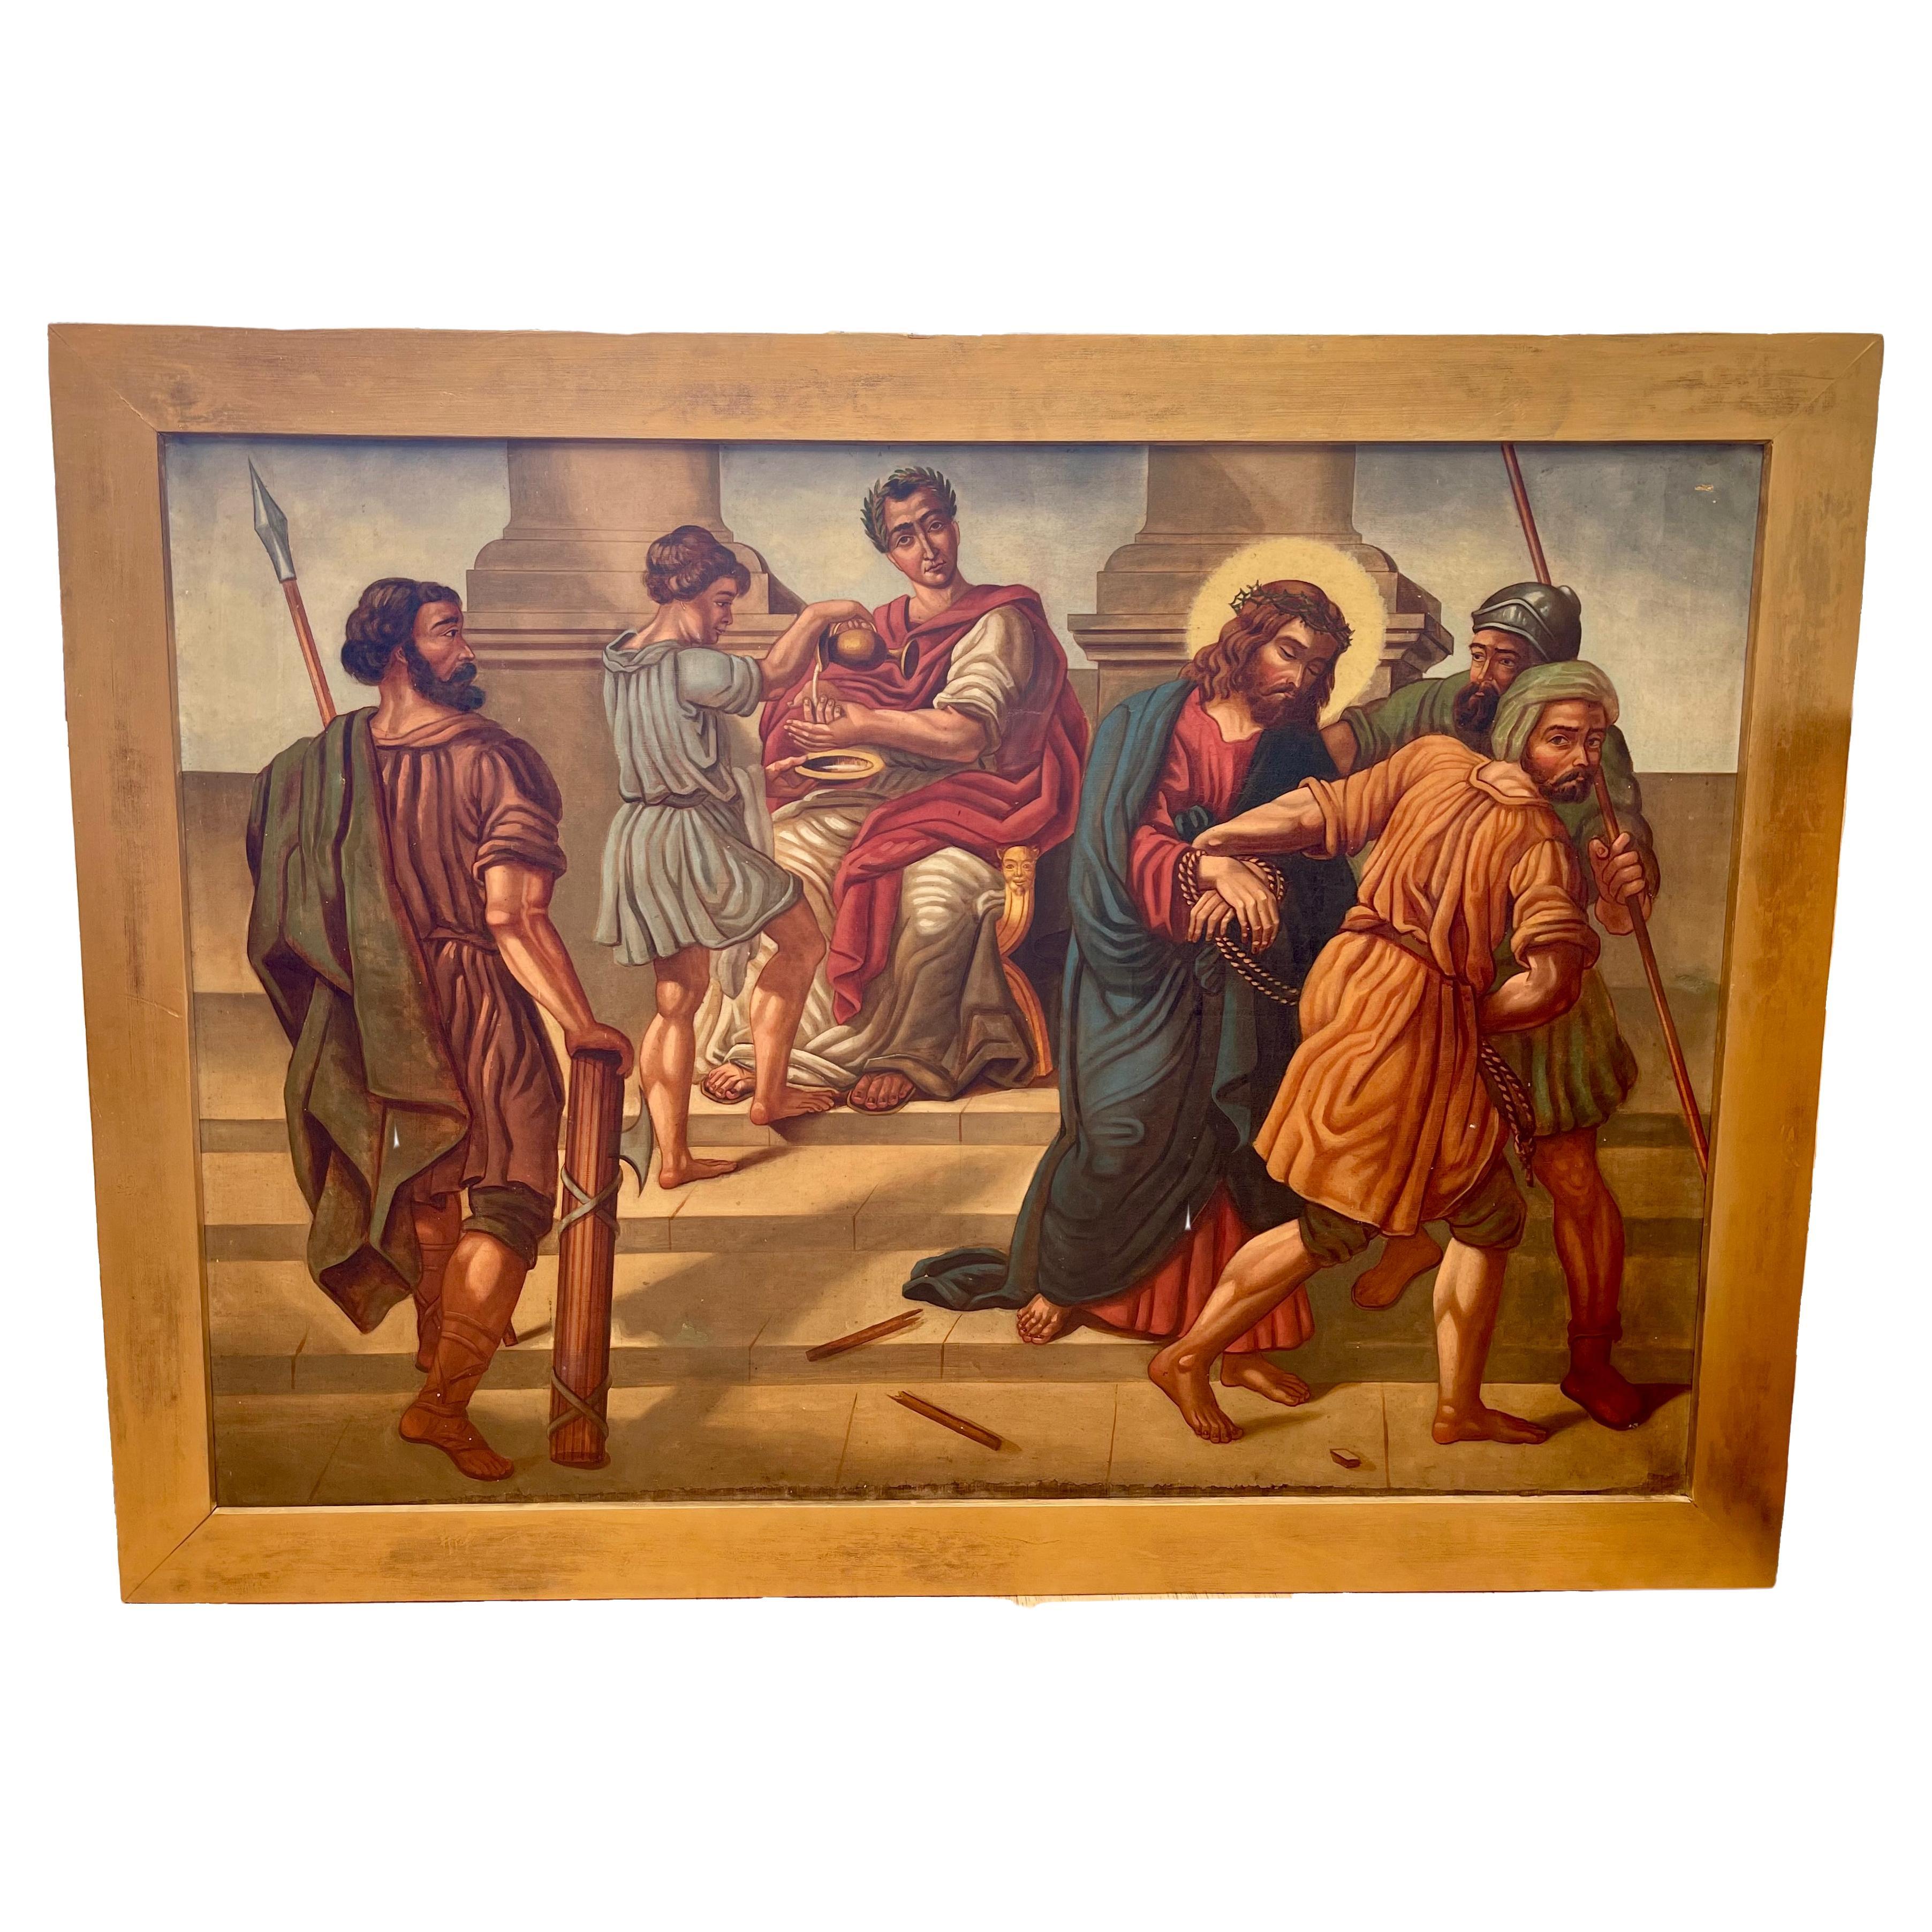 Großes religiöses Gemälde: Die Hinrichtung Jesu durch Pontius Pilate, 19. Jahrhundert